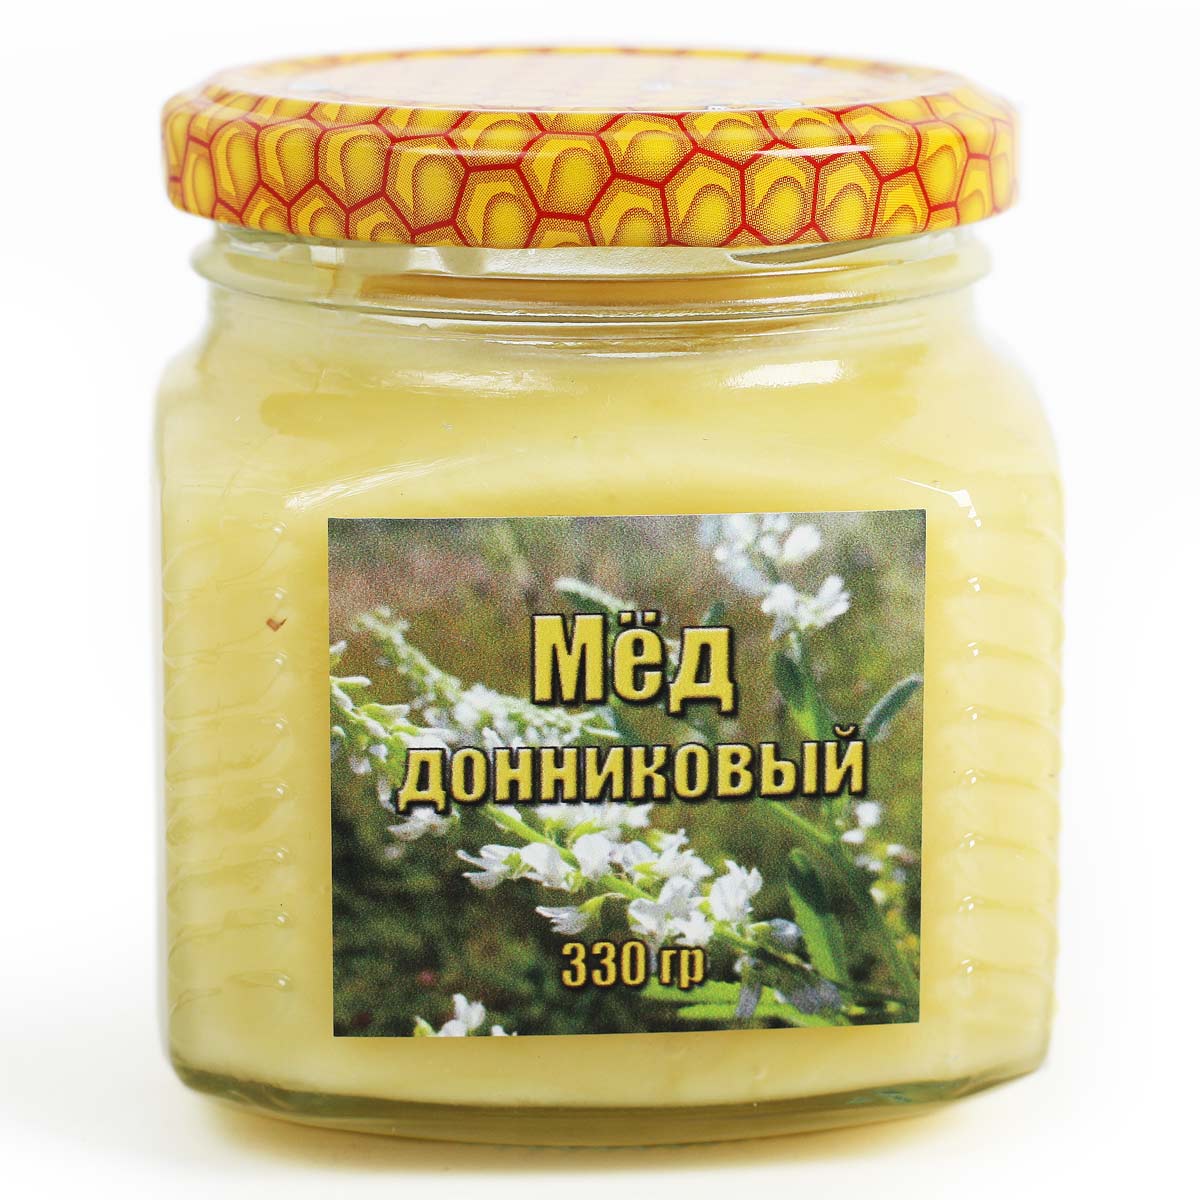 Башкирский мёд донниковый 330г